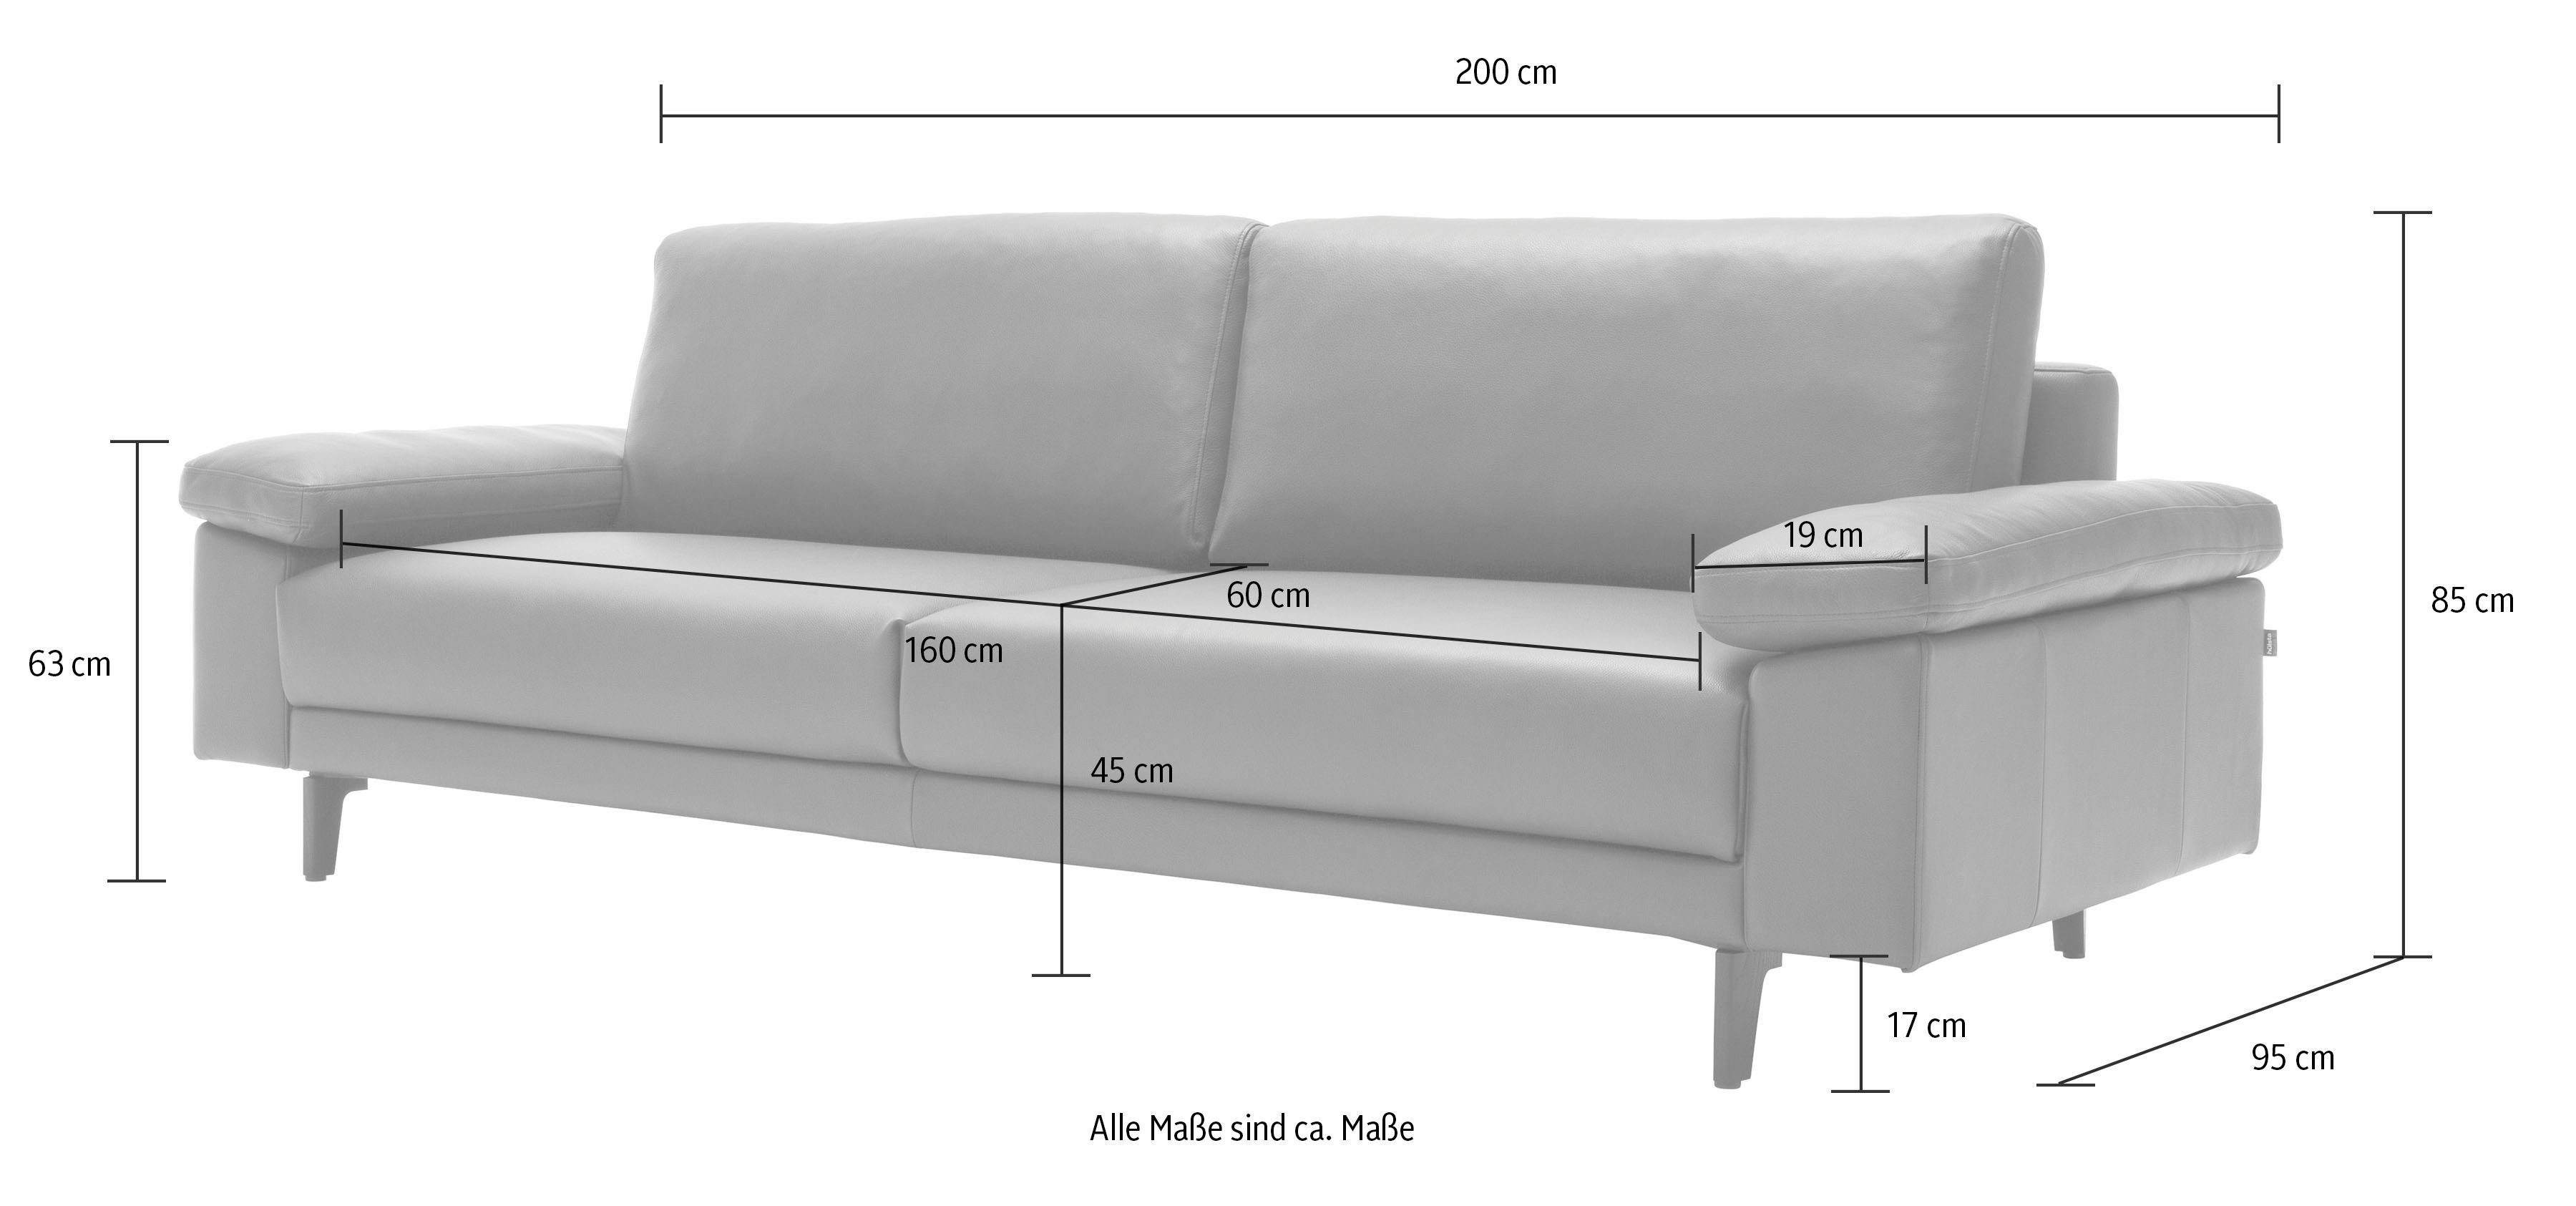 2,5-Sitzer hülsta hs.450 sofa